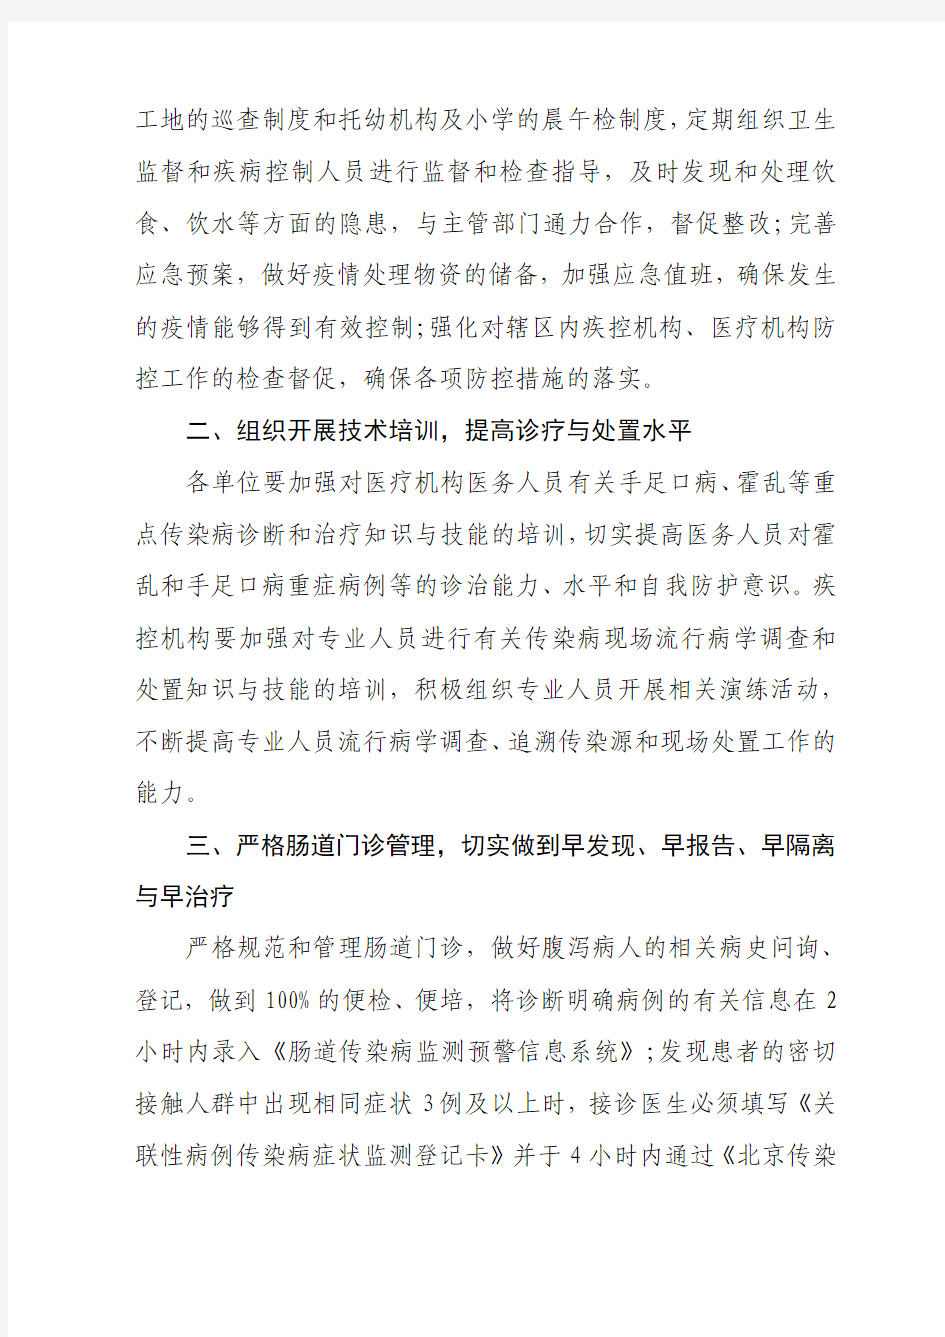 北京市卫生局转发卫生部办公厅关于加强以霍乱为重点的肠道传染病防控工作的通知